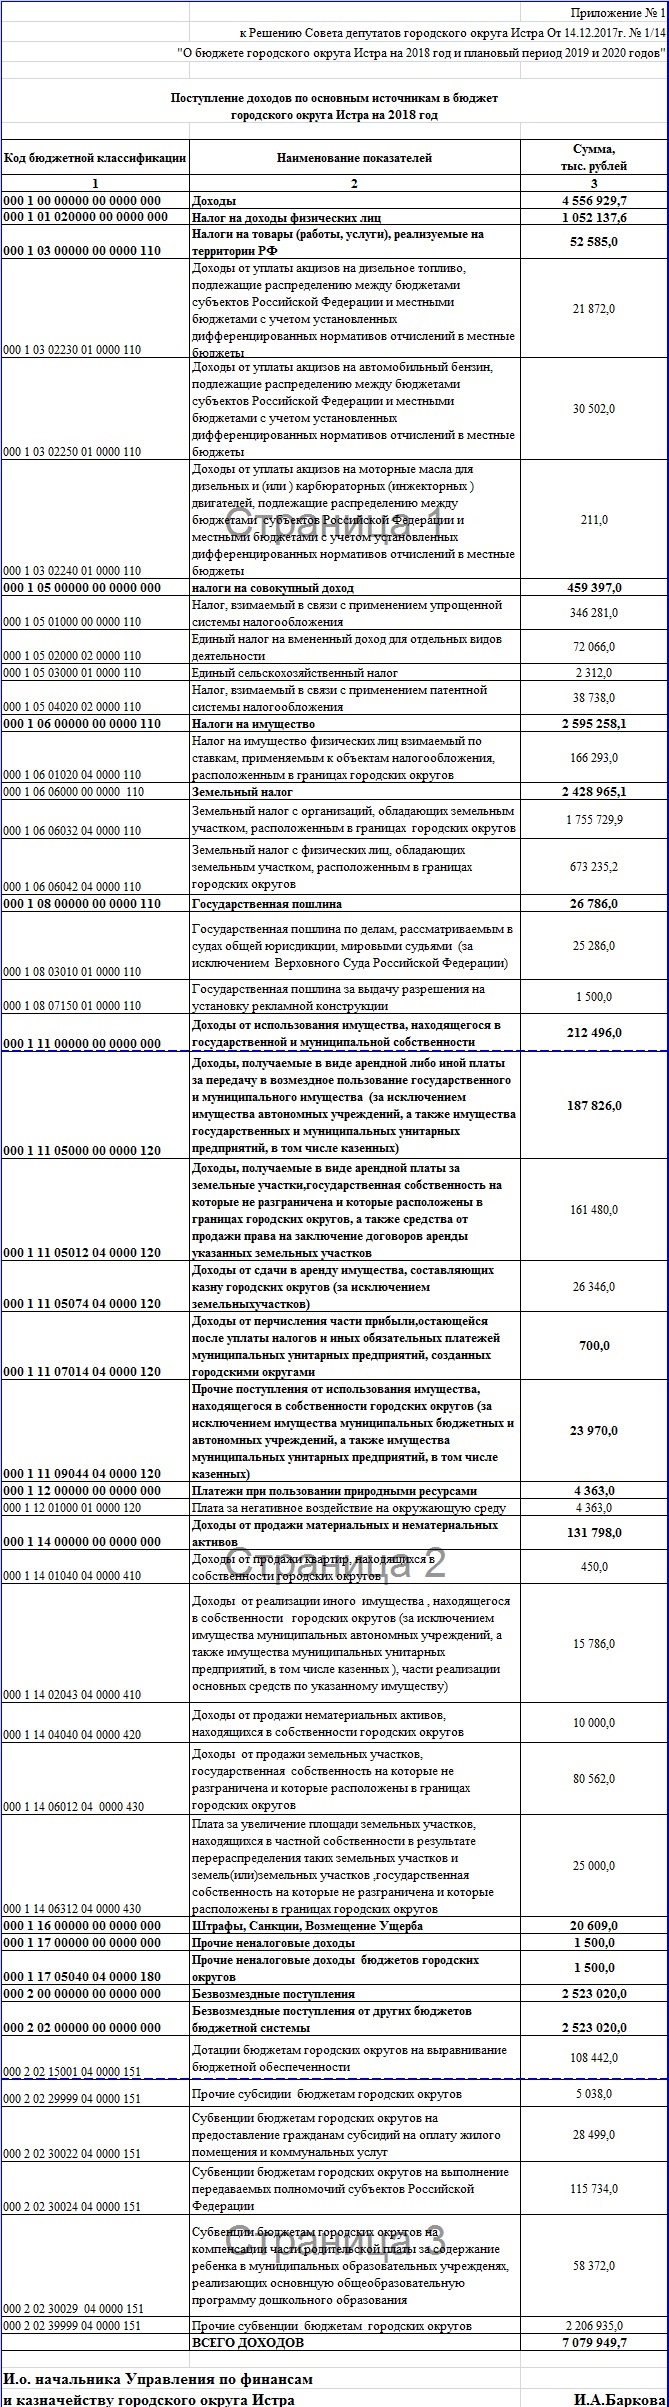 Доходы бюджета Истры увеличатся больше чем на миллиард рублей